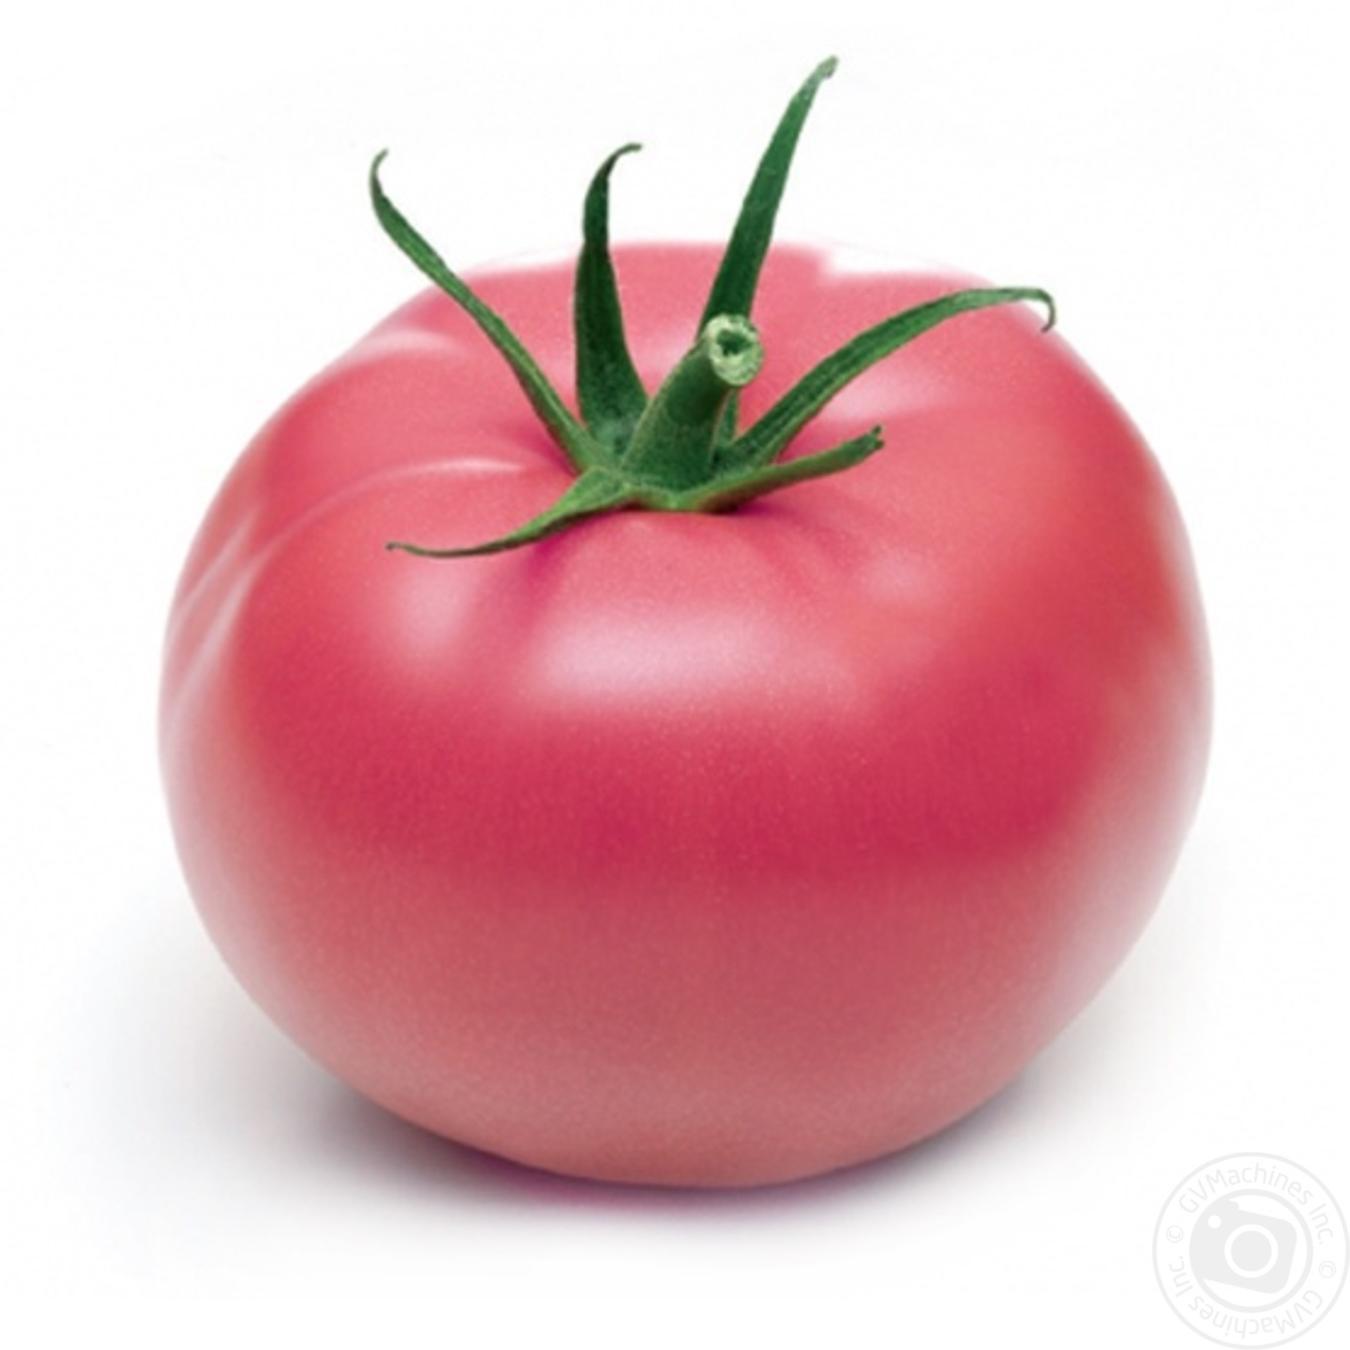 юсуповский помидор фото